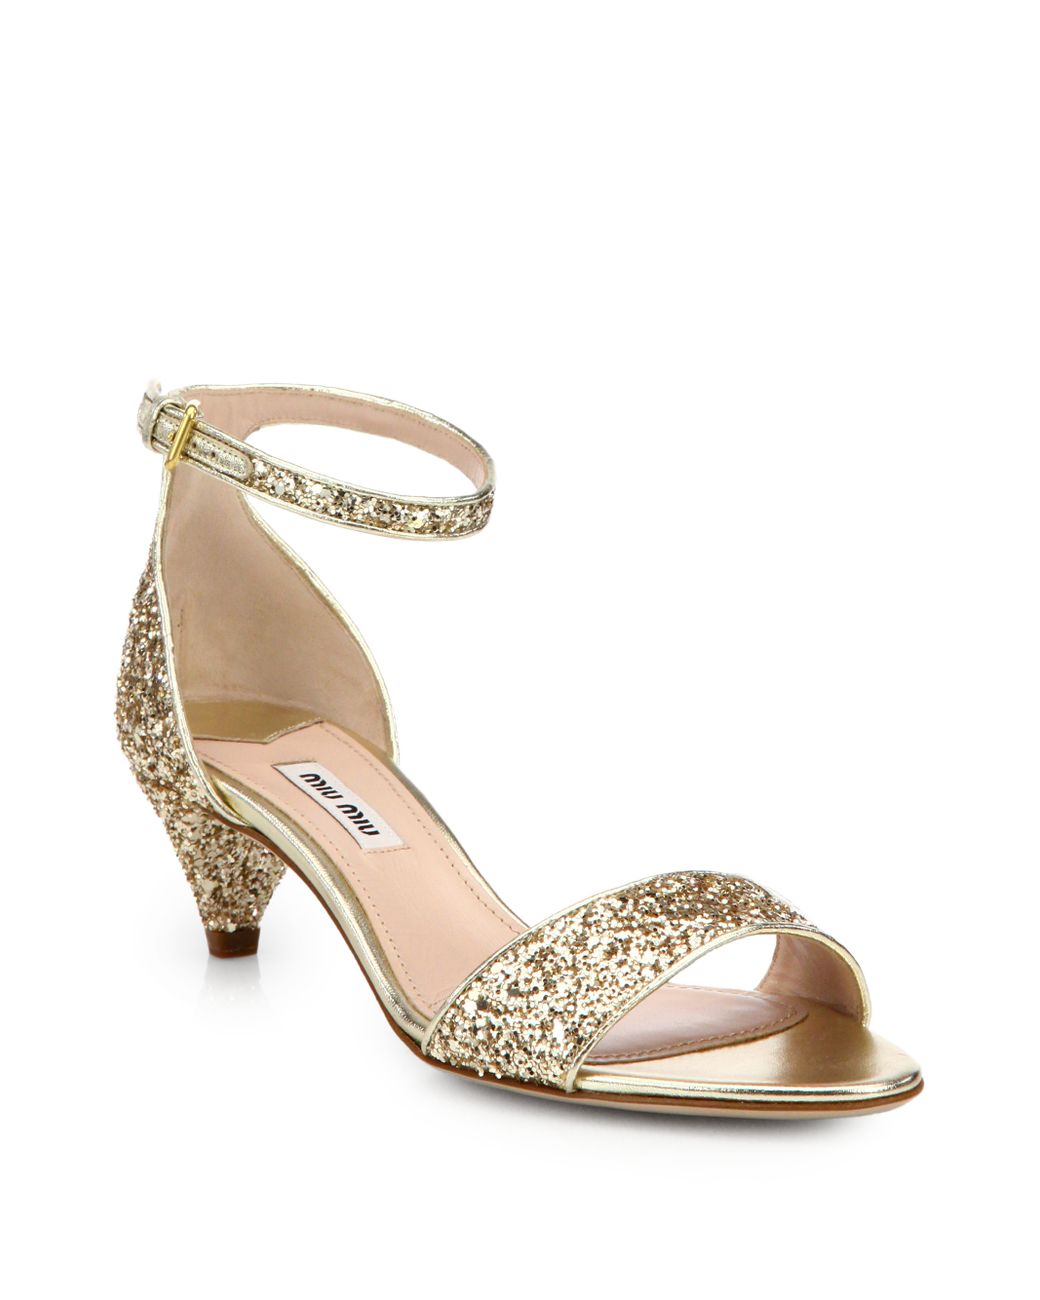 Miu Miu Jeweled Glitter Kitten-Heeled Sandals in Metallic | Lyst